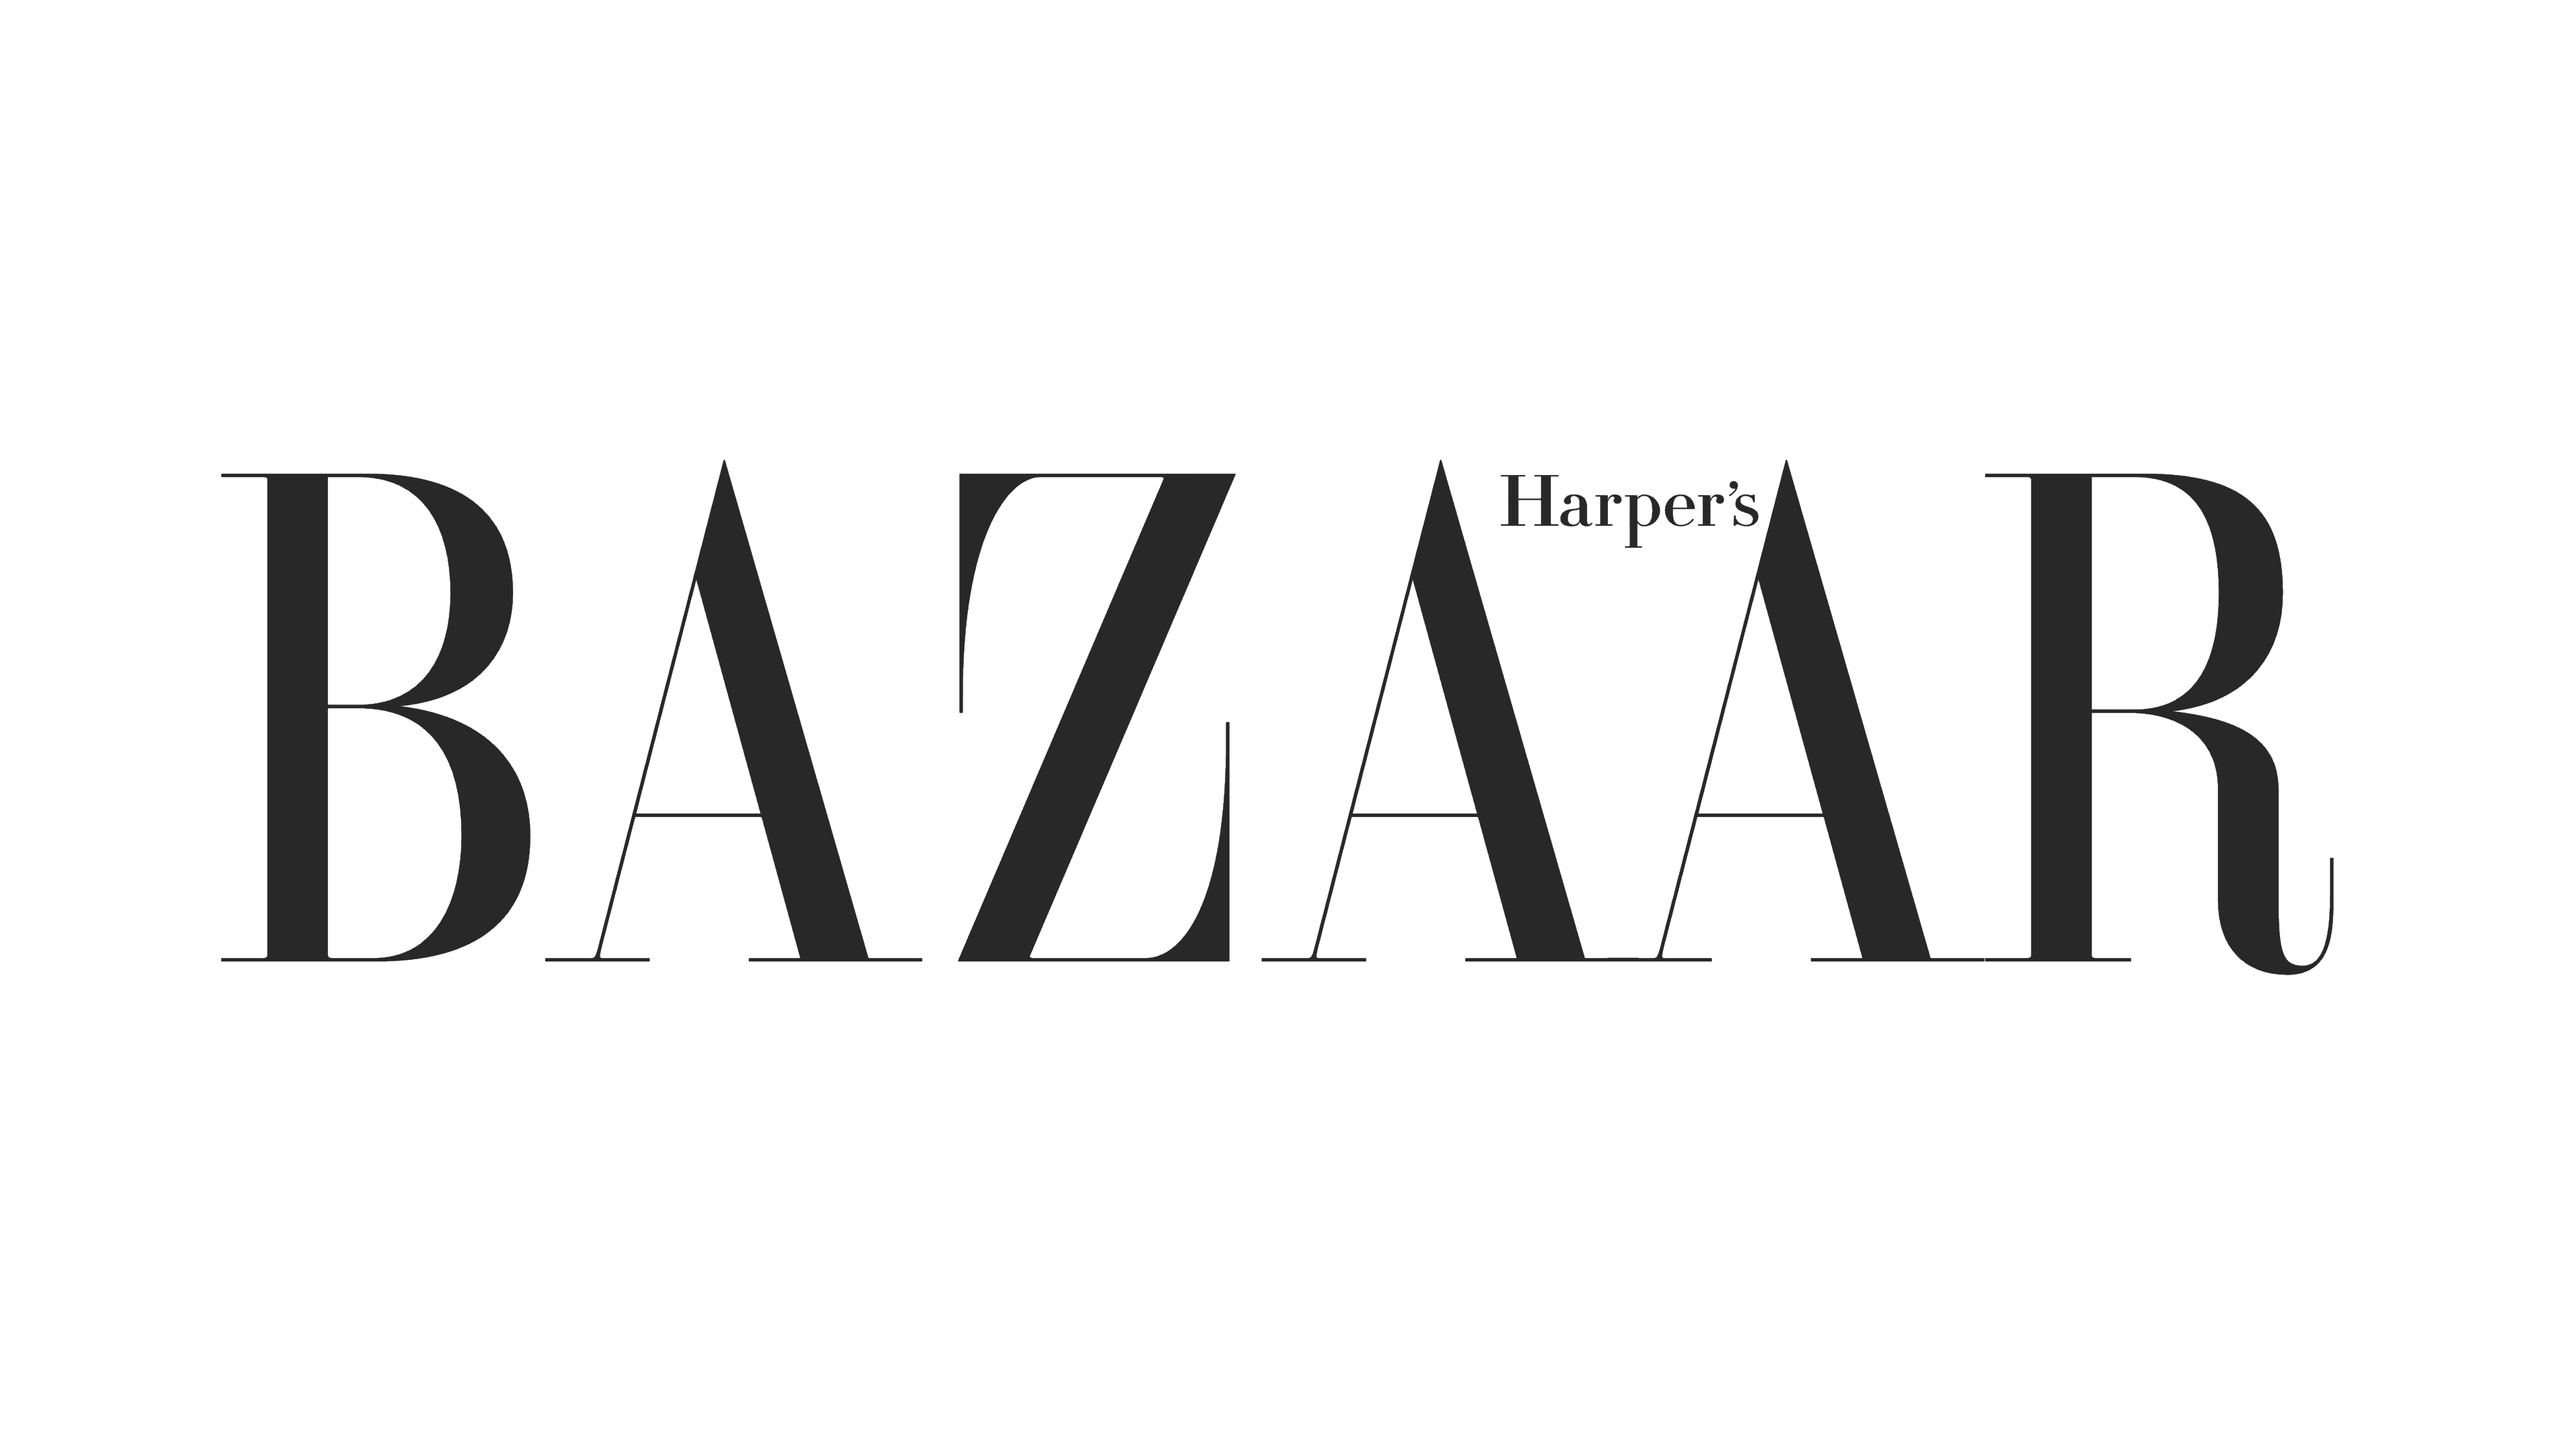 Harpers-Bazaar-logo.png__PID:e4b8c0f5-0c78-4eb1-ab6d-cd7a61b541f0